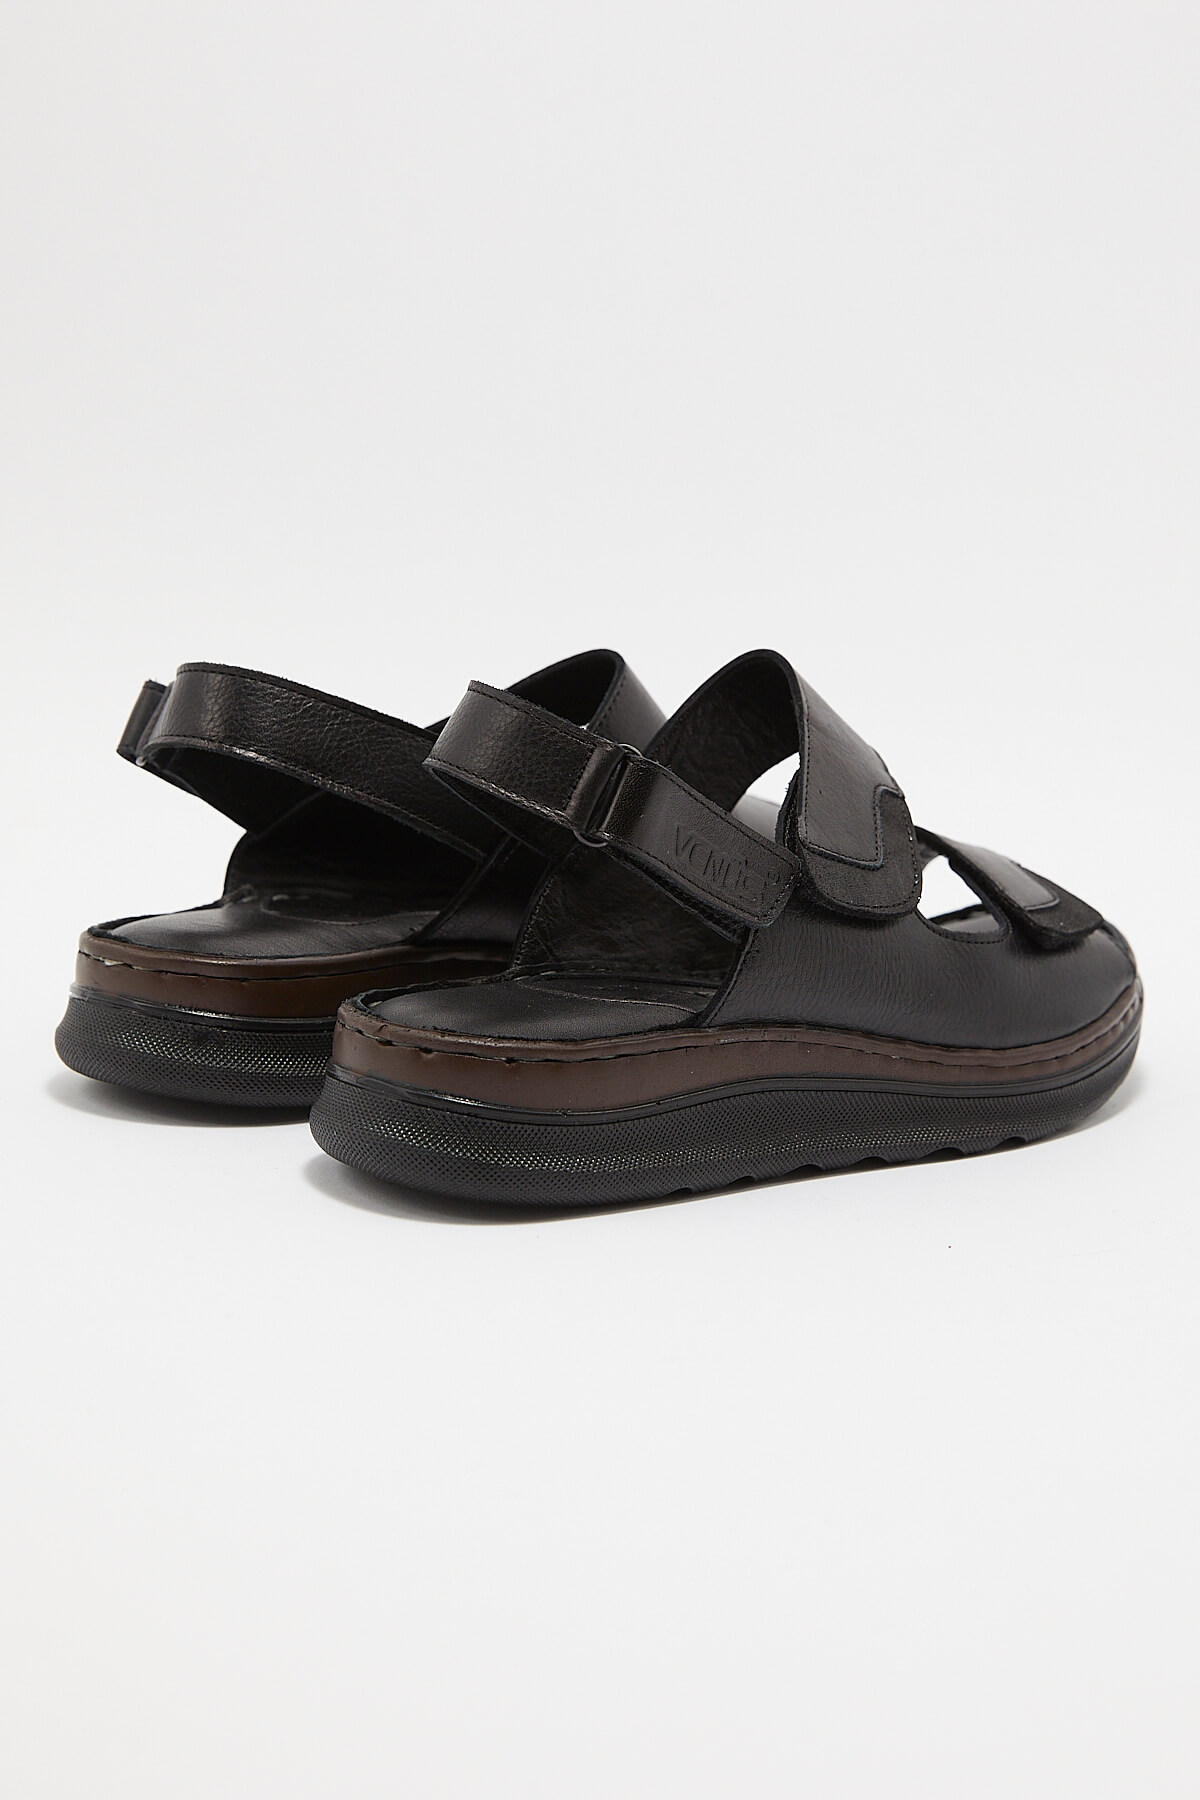 Kadın Comfort Deri Sandalet Siyah 22981715